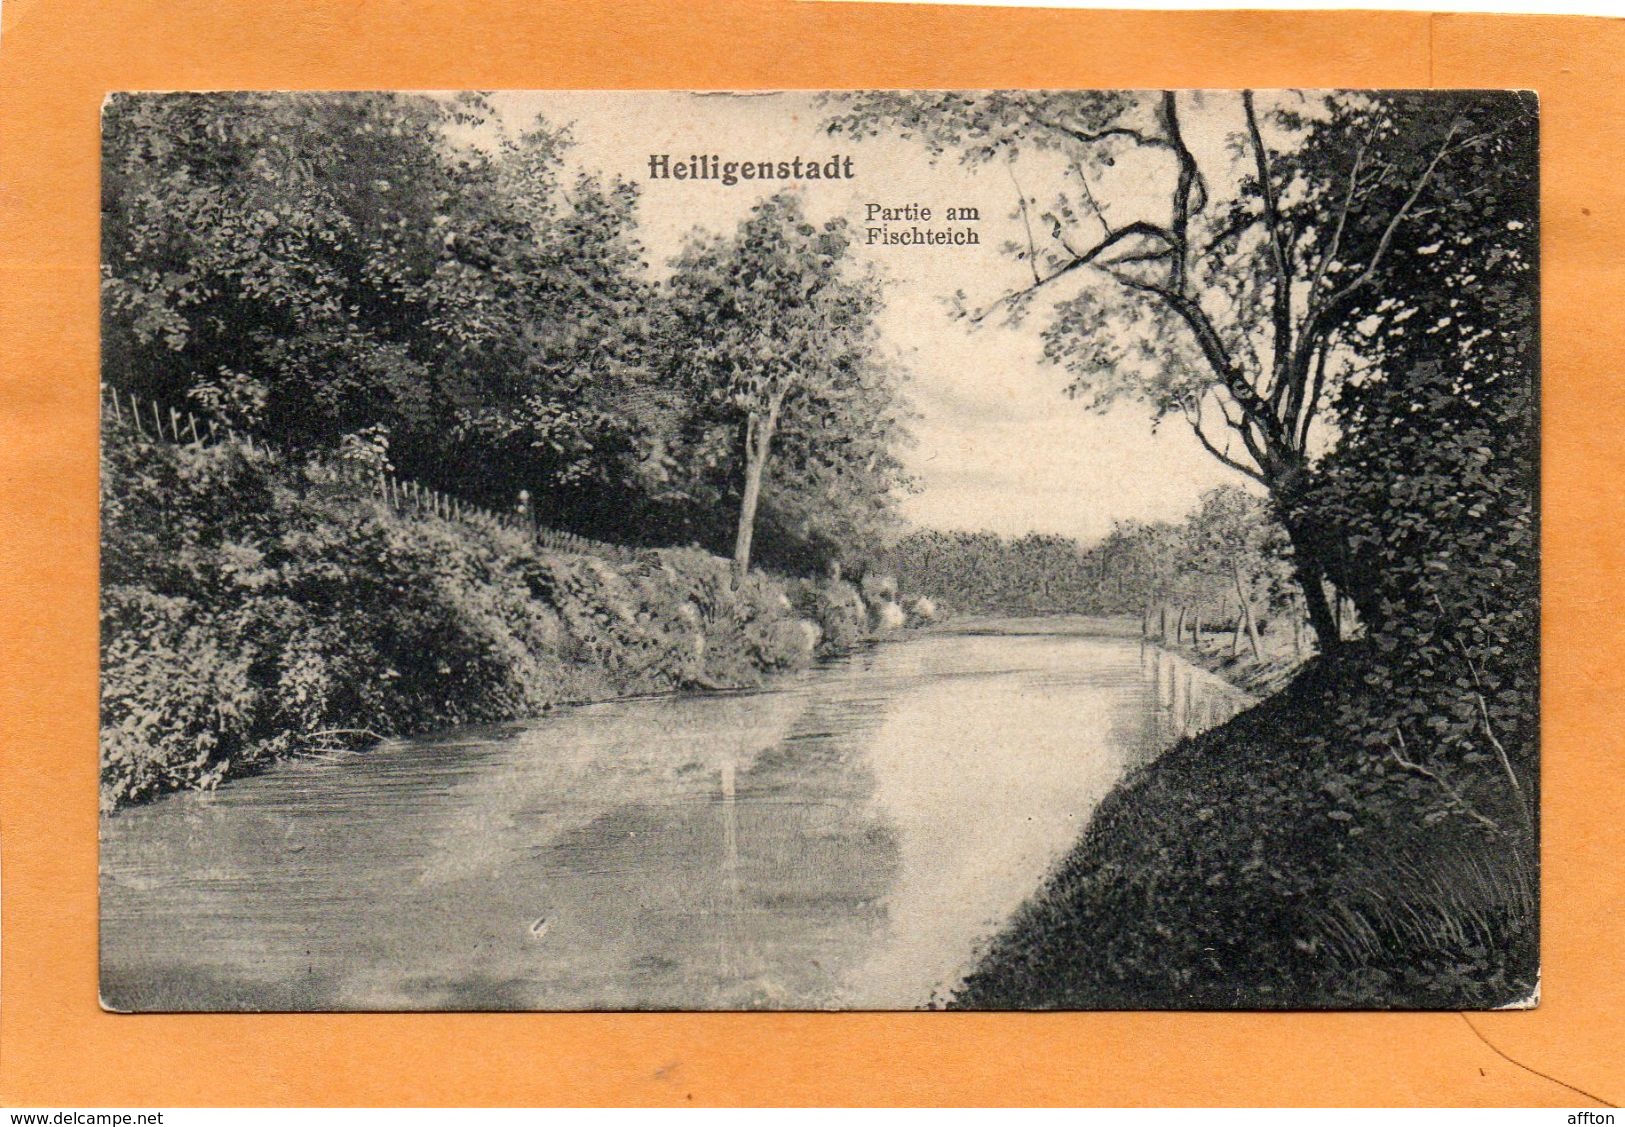 Heiligenstadt Germany 1908 Postcard - Heiligenstadt